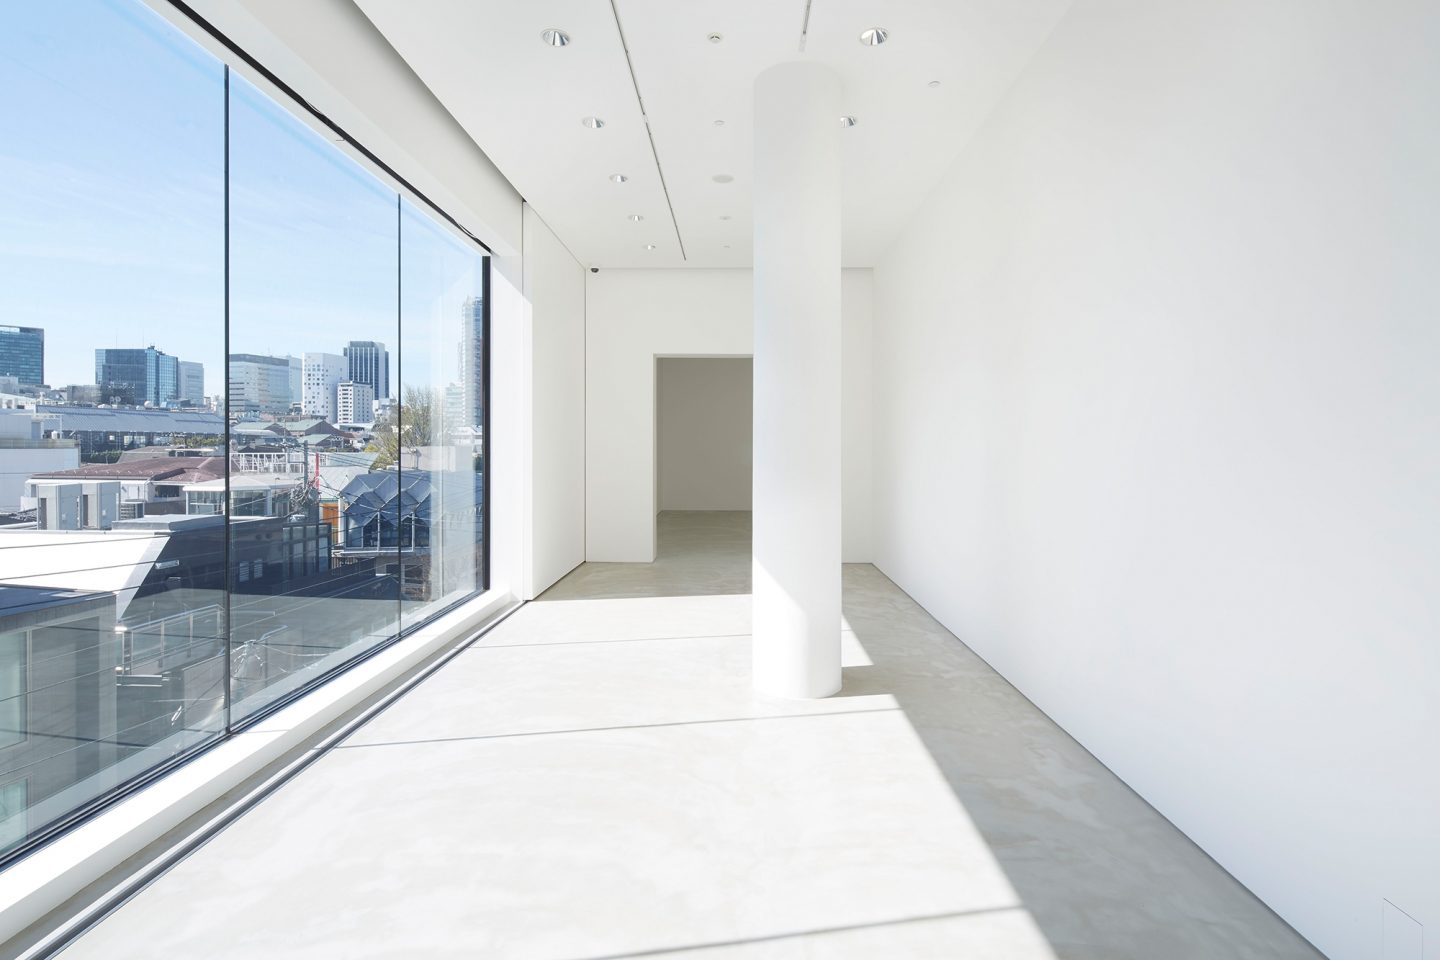 Gyre Gallery, Tokyo, JP. Hildebrand Studios AG, Architecture and Urban Design in Zurich, Switzerland